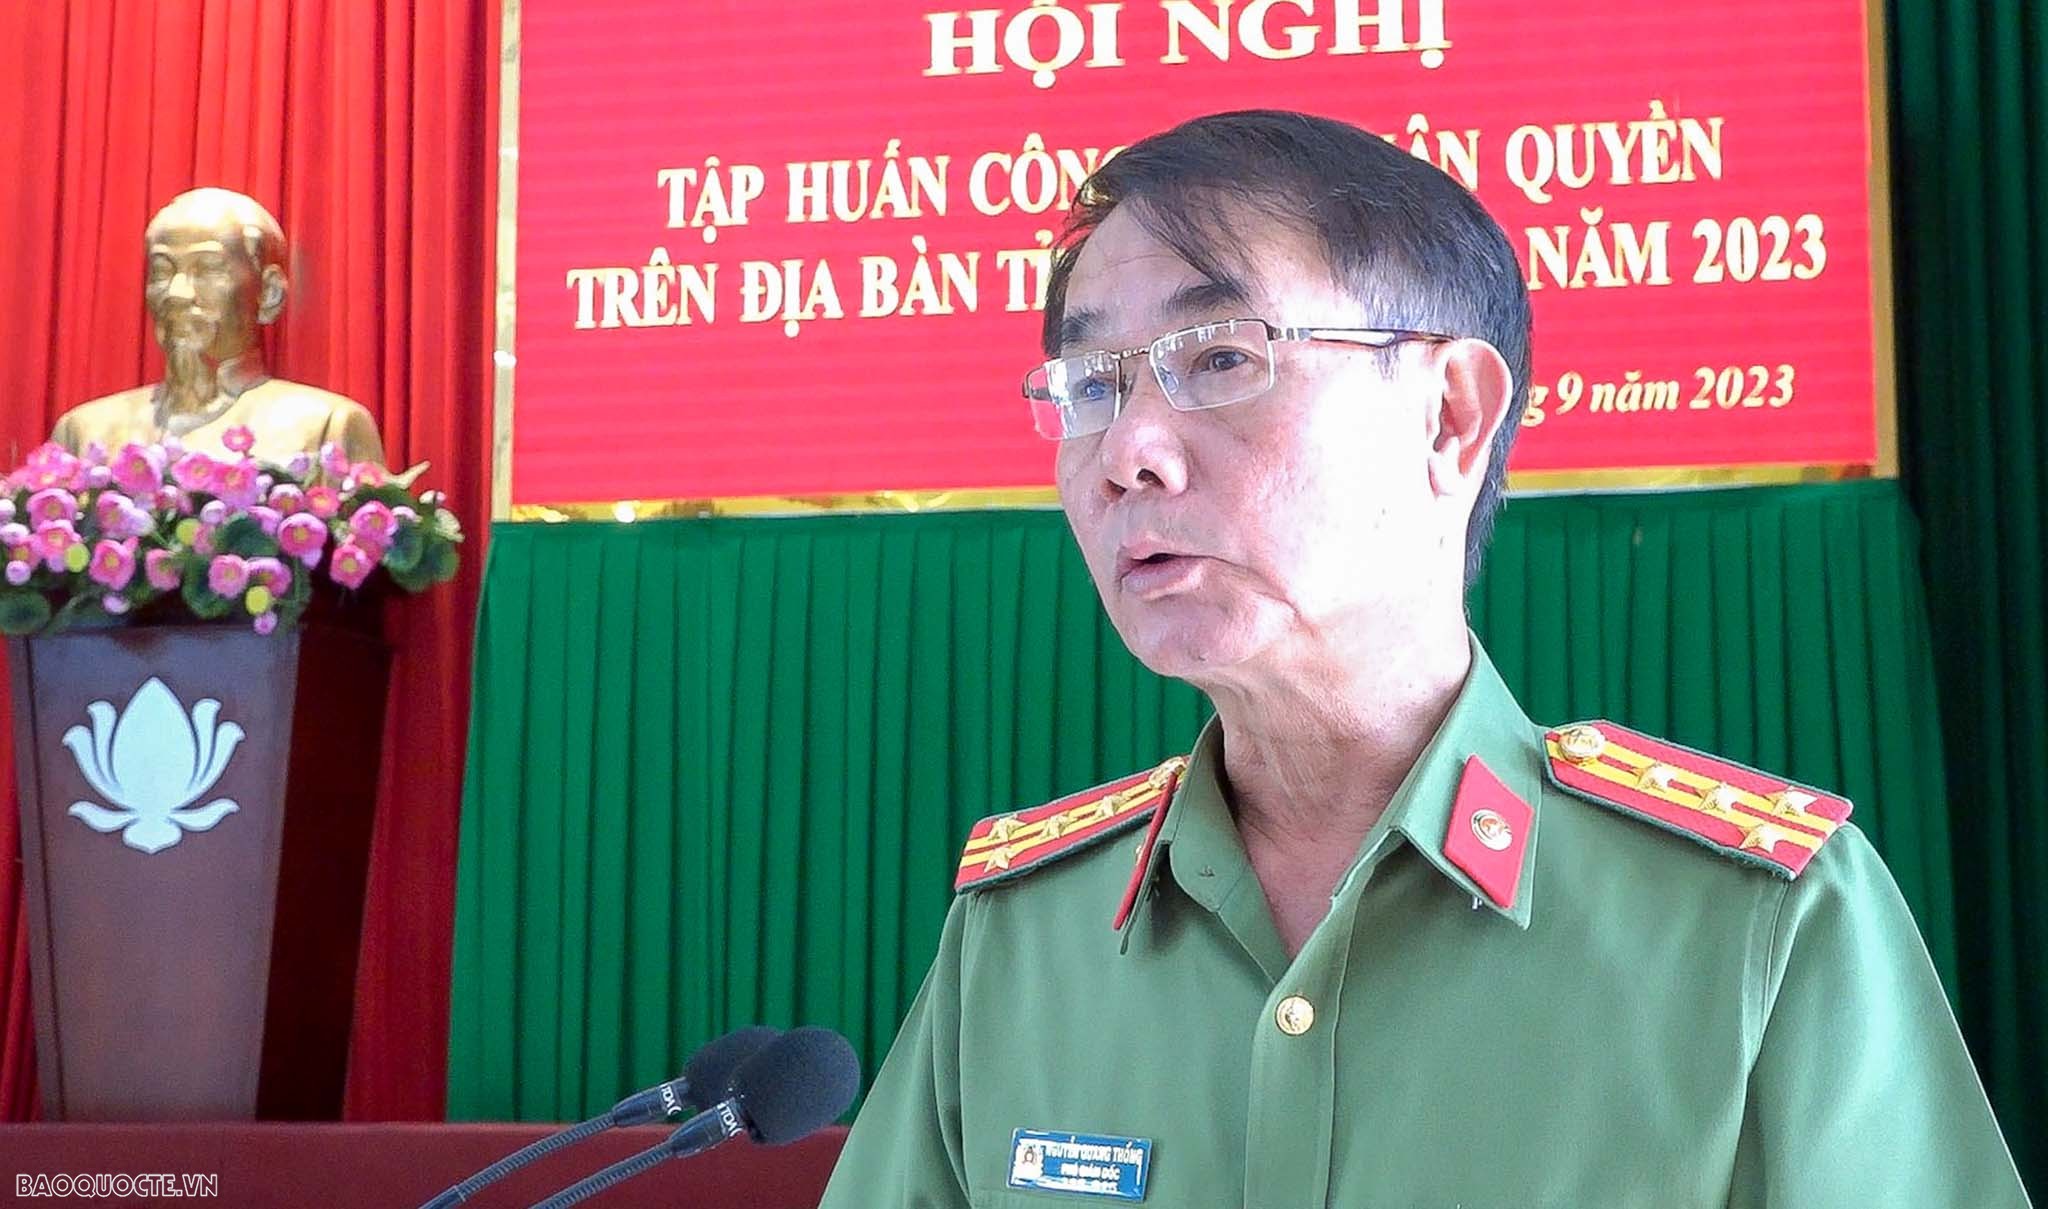 ông Nguyễn Quang Thống, Phó Trưởng ban Thường trực, Ban chỉ đạo nhân quyền tỉnh